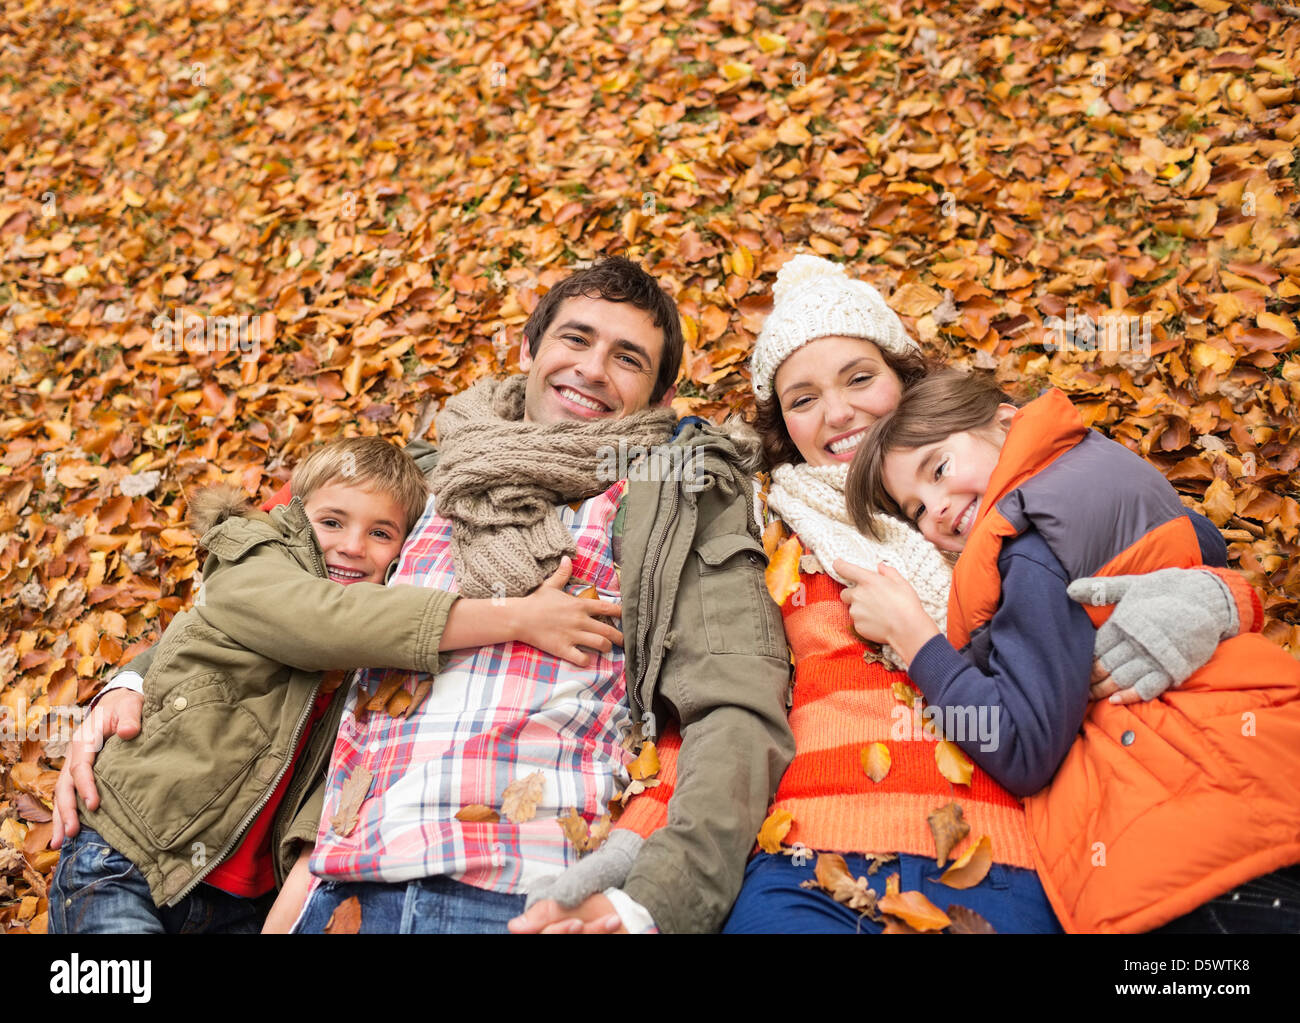 Colocación familiar sonriente en hojas de otoño Foto de stock